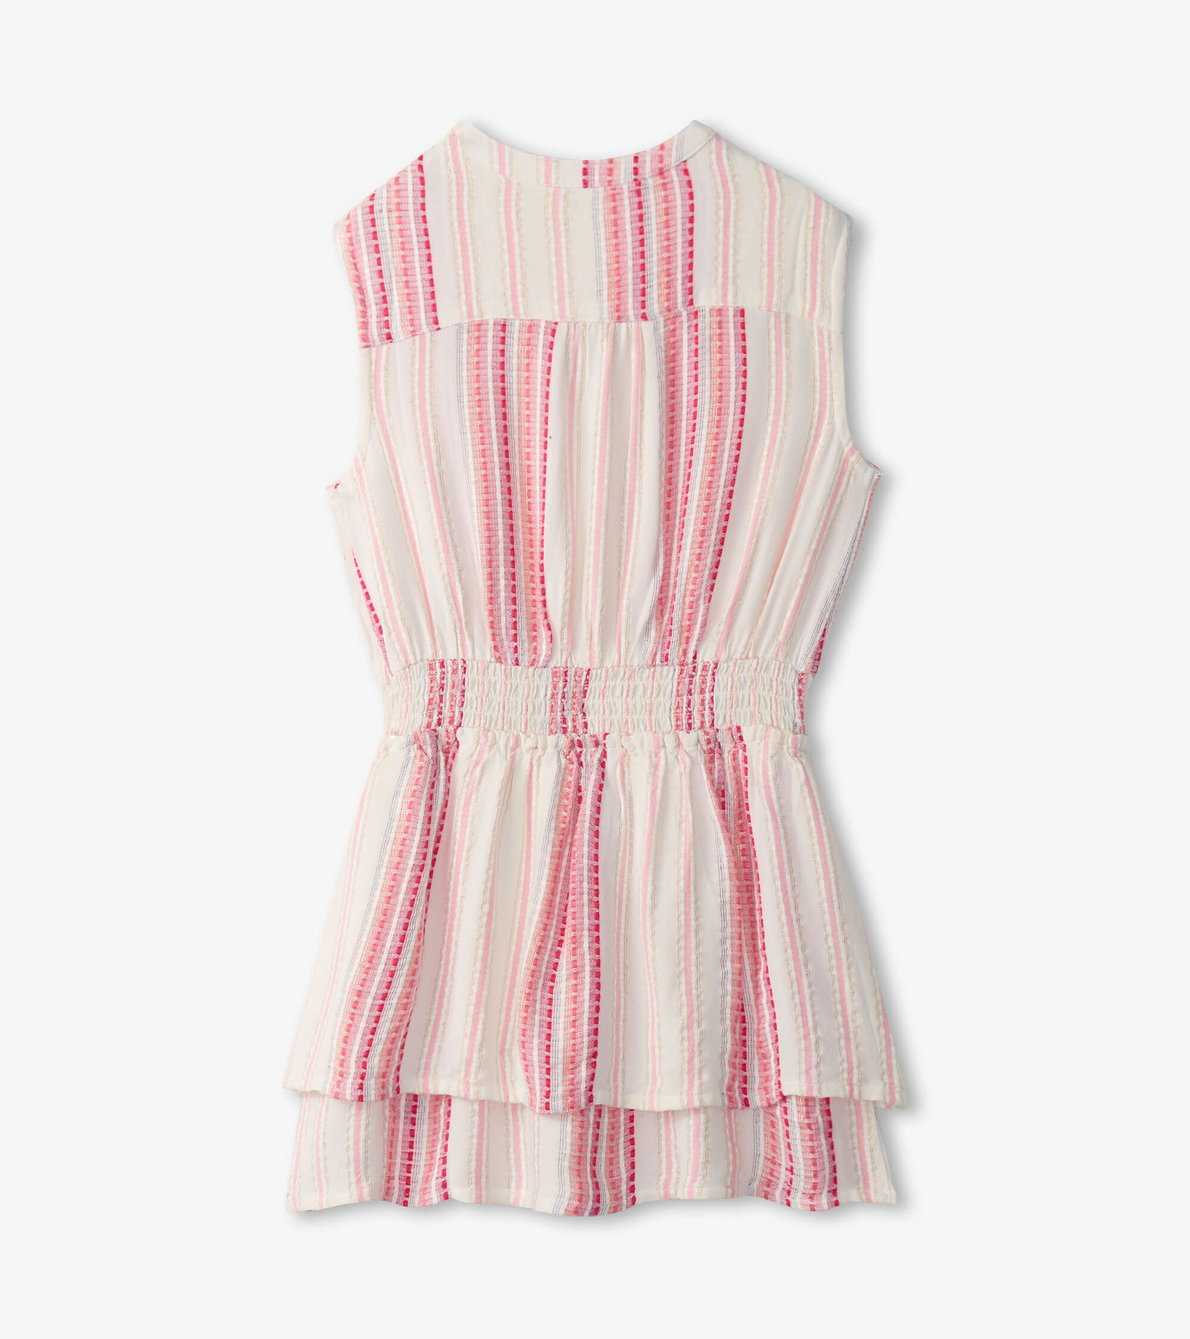 View larger image of Girls Ribbon Stripe Smocked Waist Dress